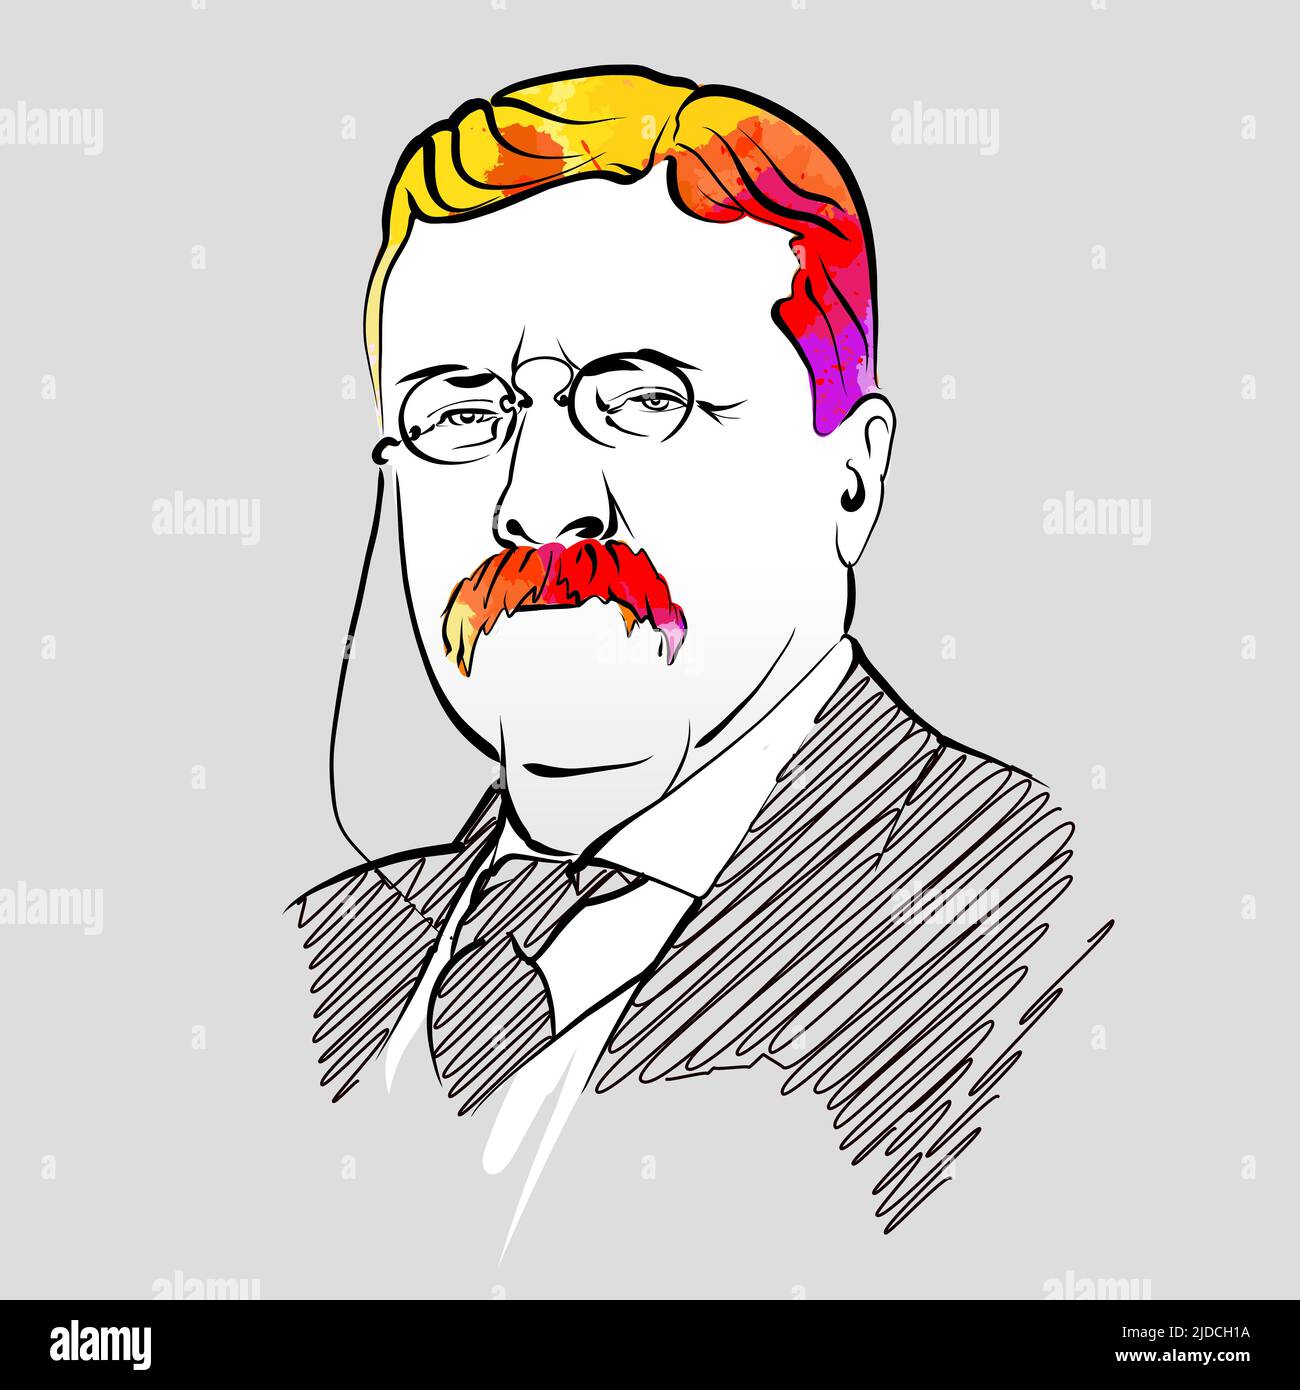 Theodore Roosevelt Bunte Haar Vektor Zeichnung. Handgezeichnete Umrissskizze. Zeichnung zur Verwendung bei Marketingprojekten und zum Weiterverkauf als Druck. Stock Vektor